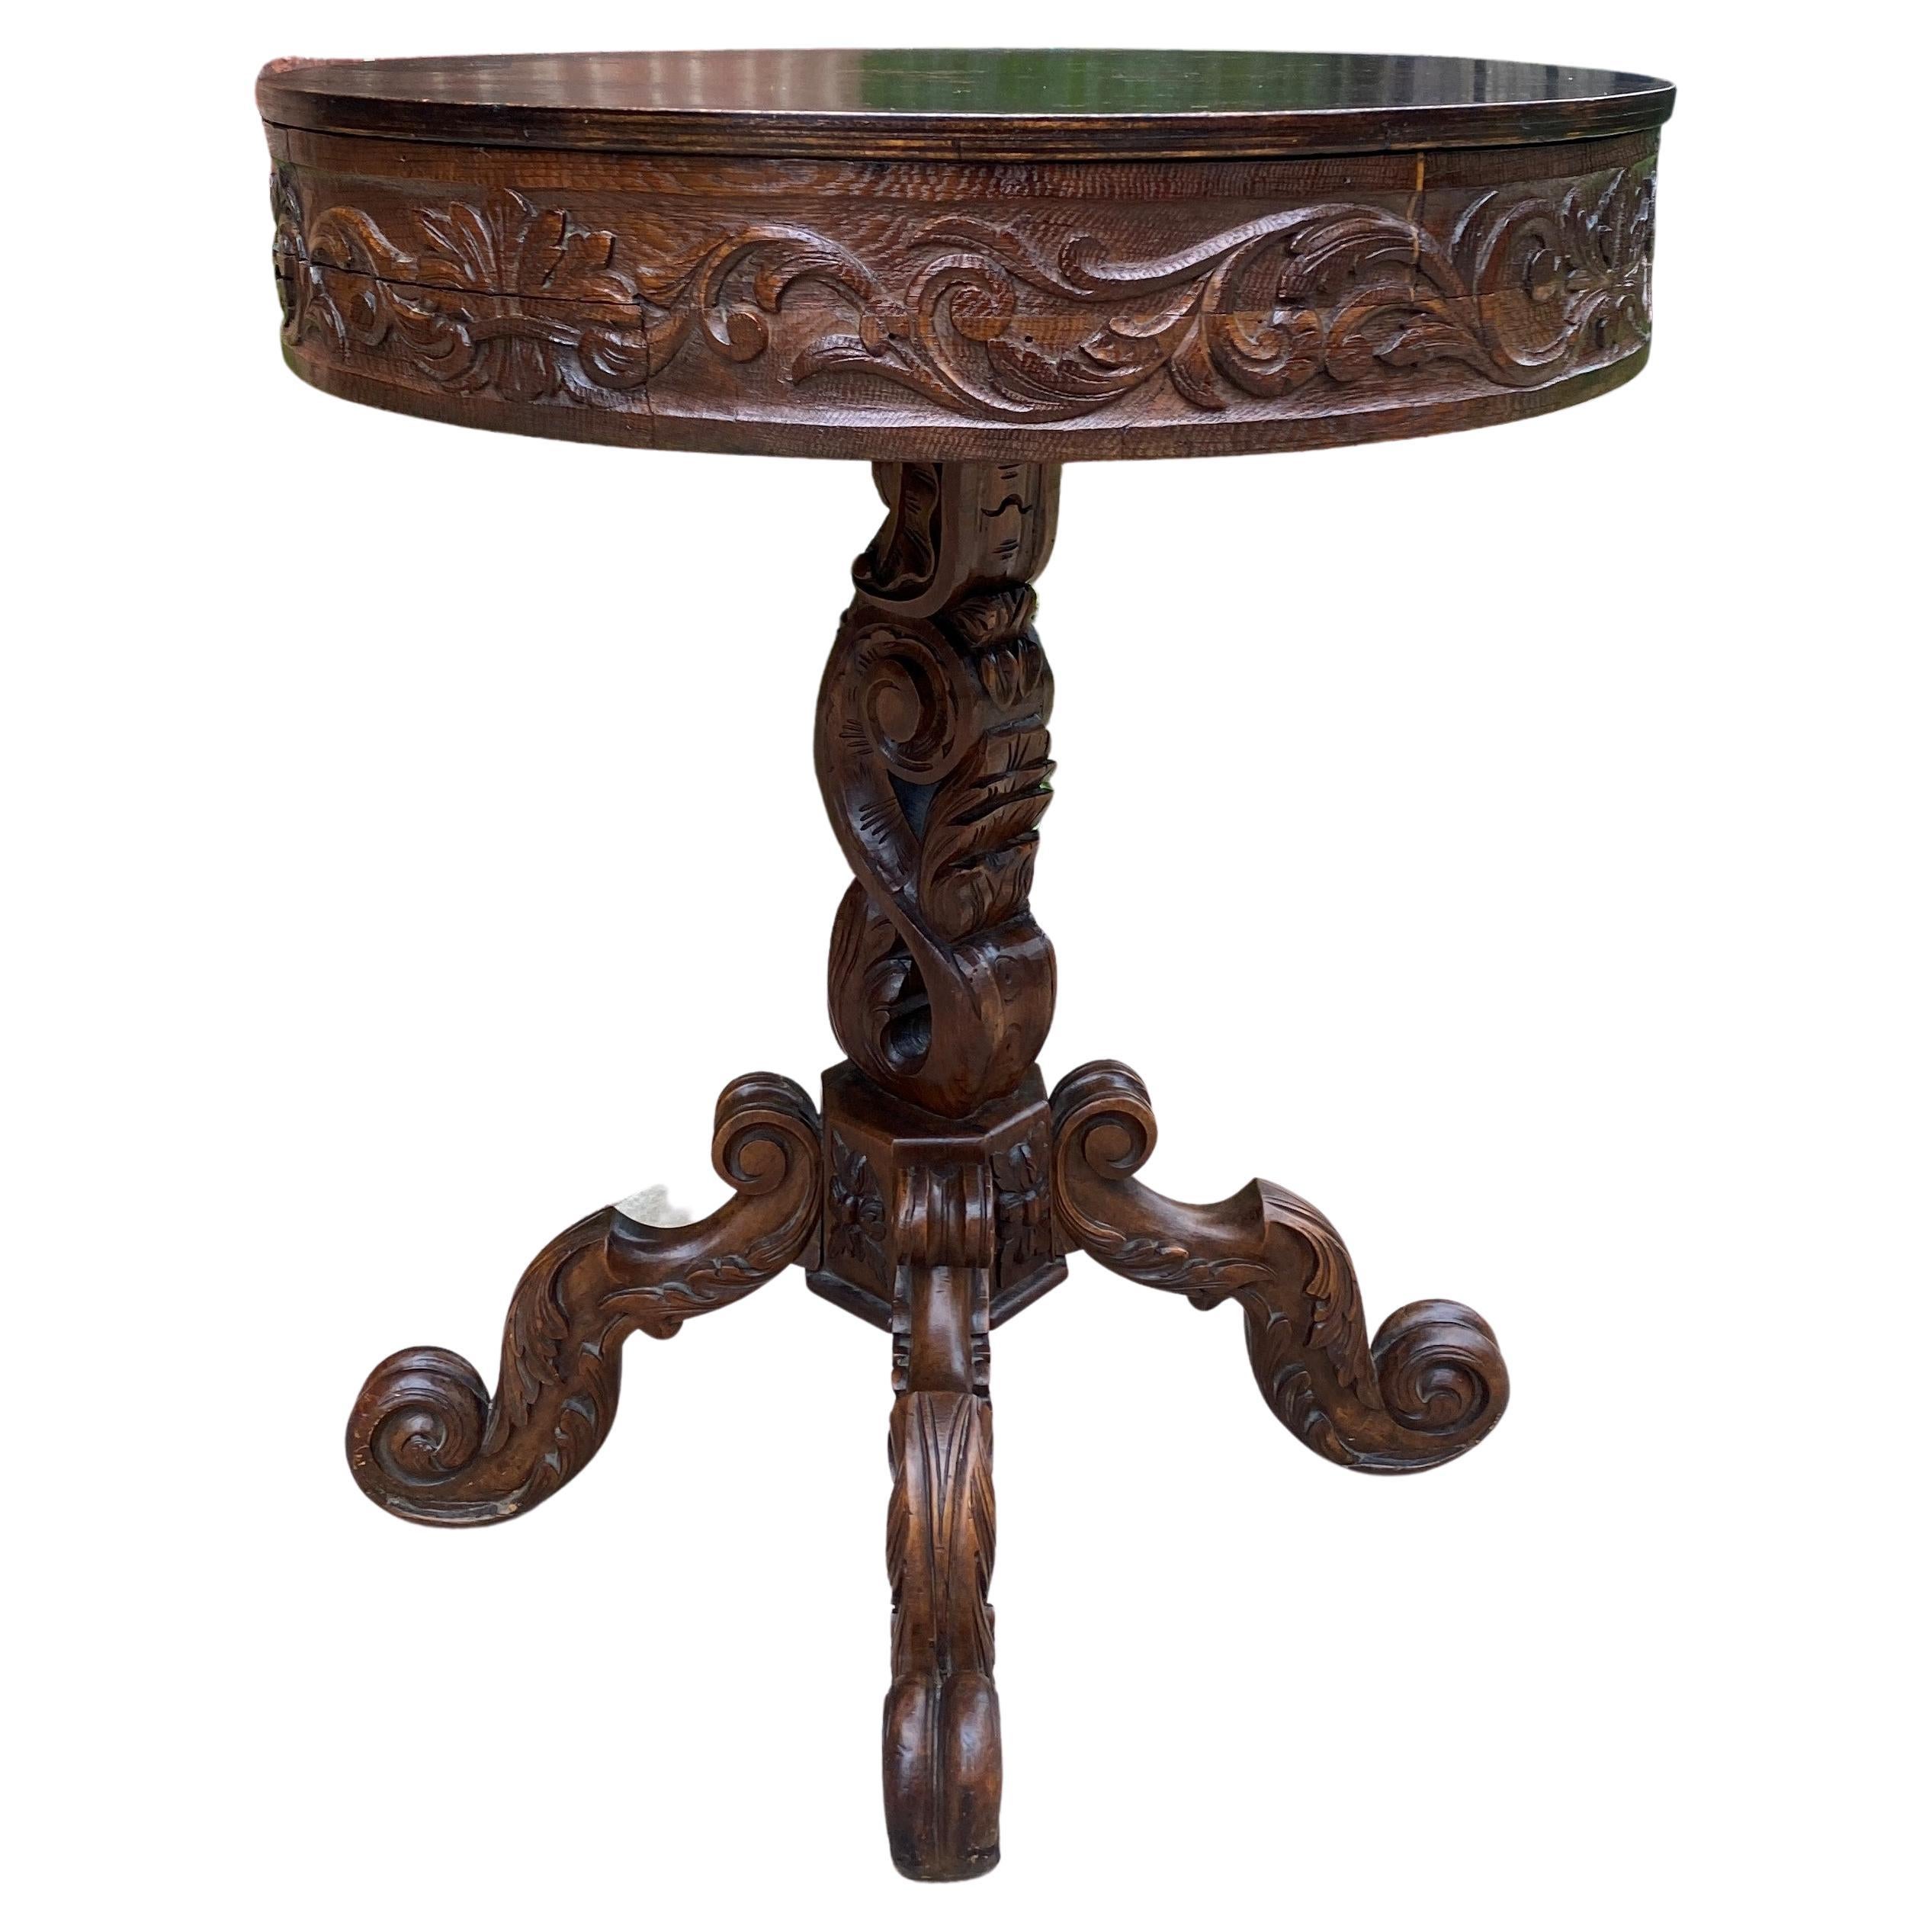 Ancienne table ronde française d'entrée ou de salon, centre de table ou piédestal Renaissance, XIXe siècle